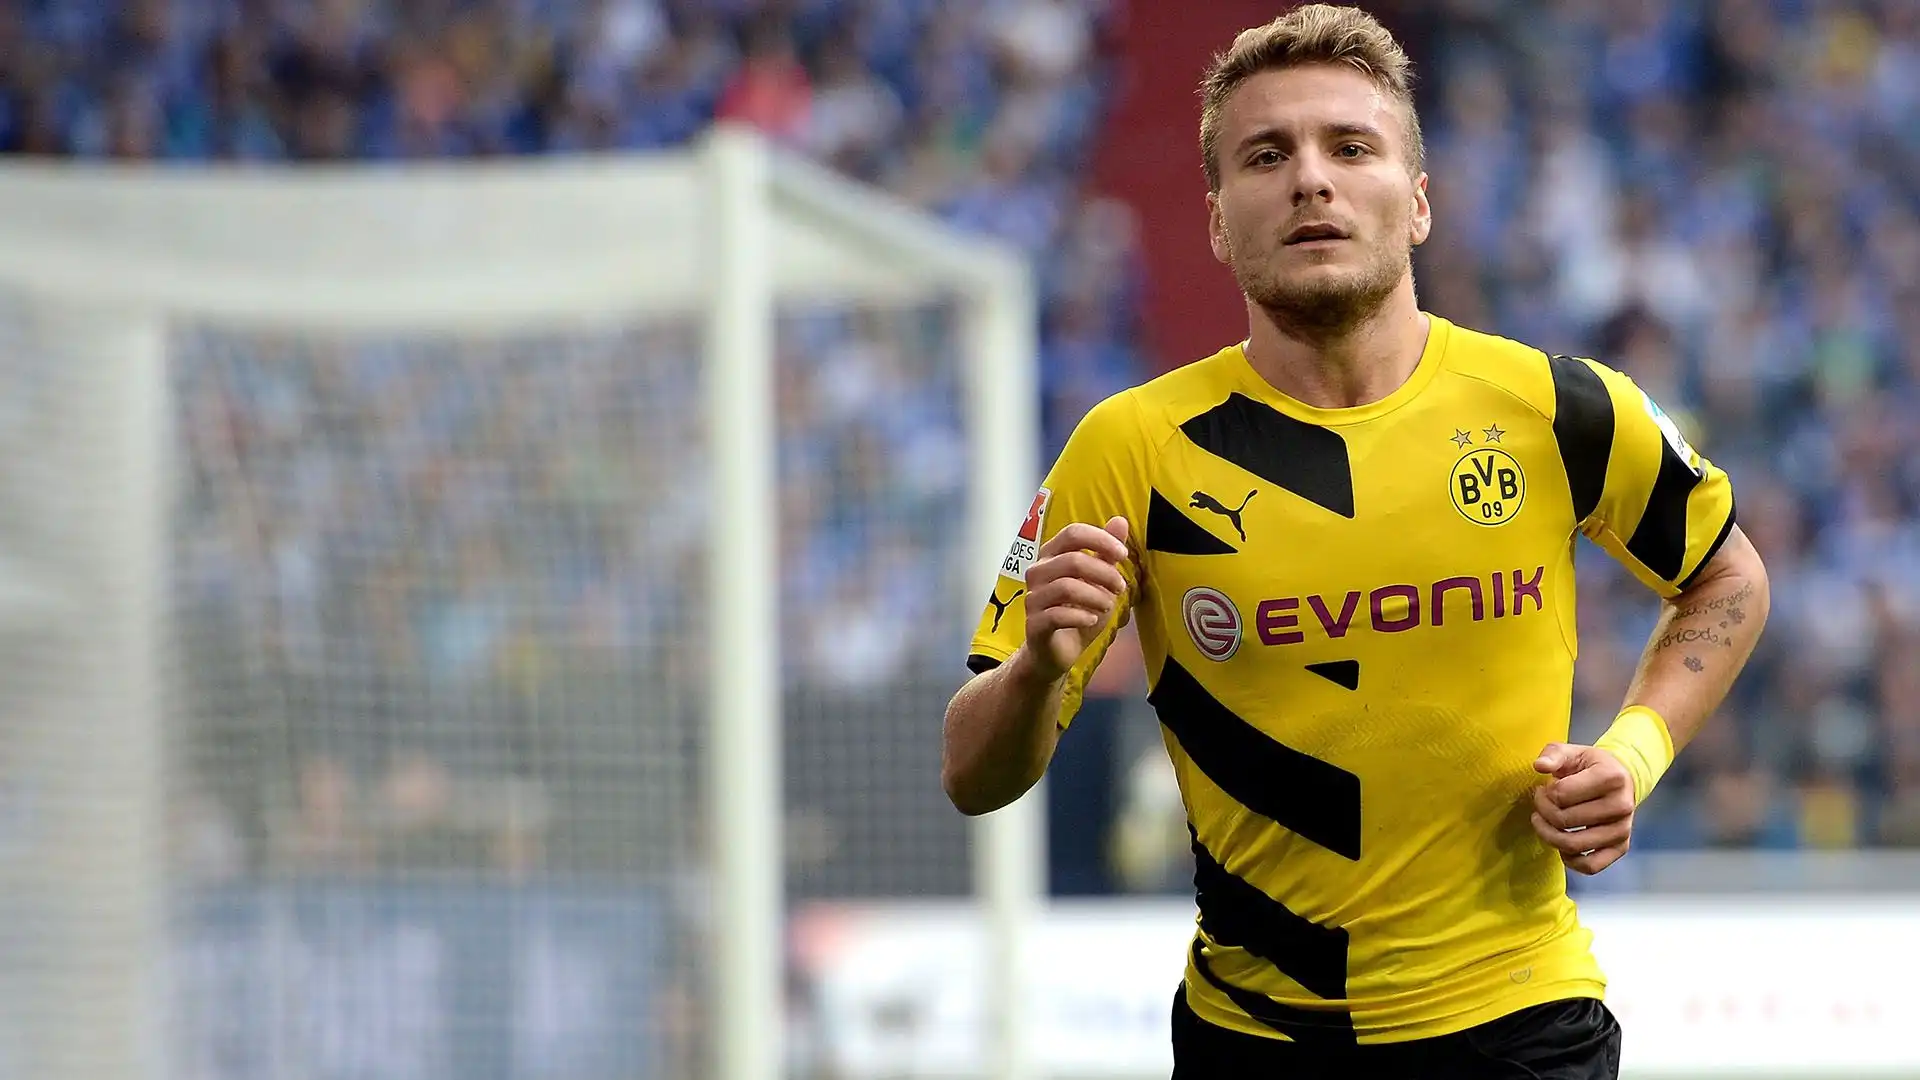 Il Borussia Dortmund aveva sborsato ben 18.5 milioni di euro per acquistarlo dal Torino